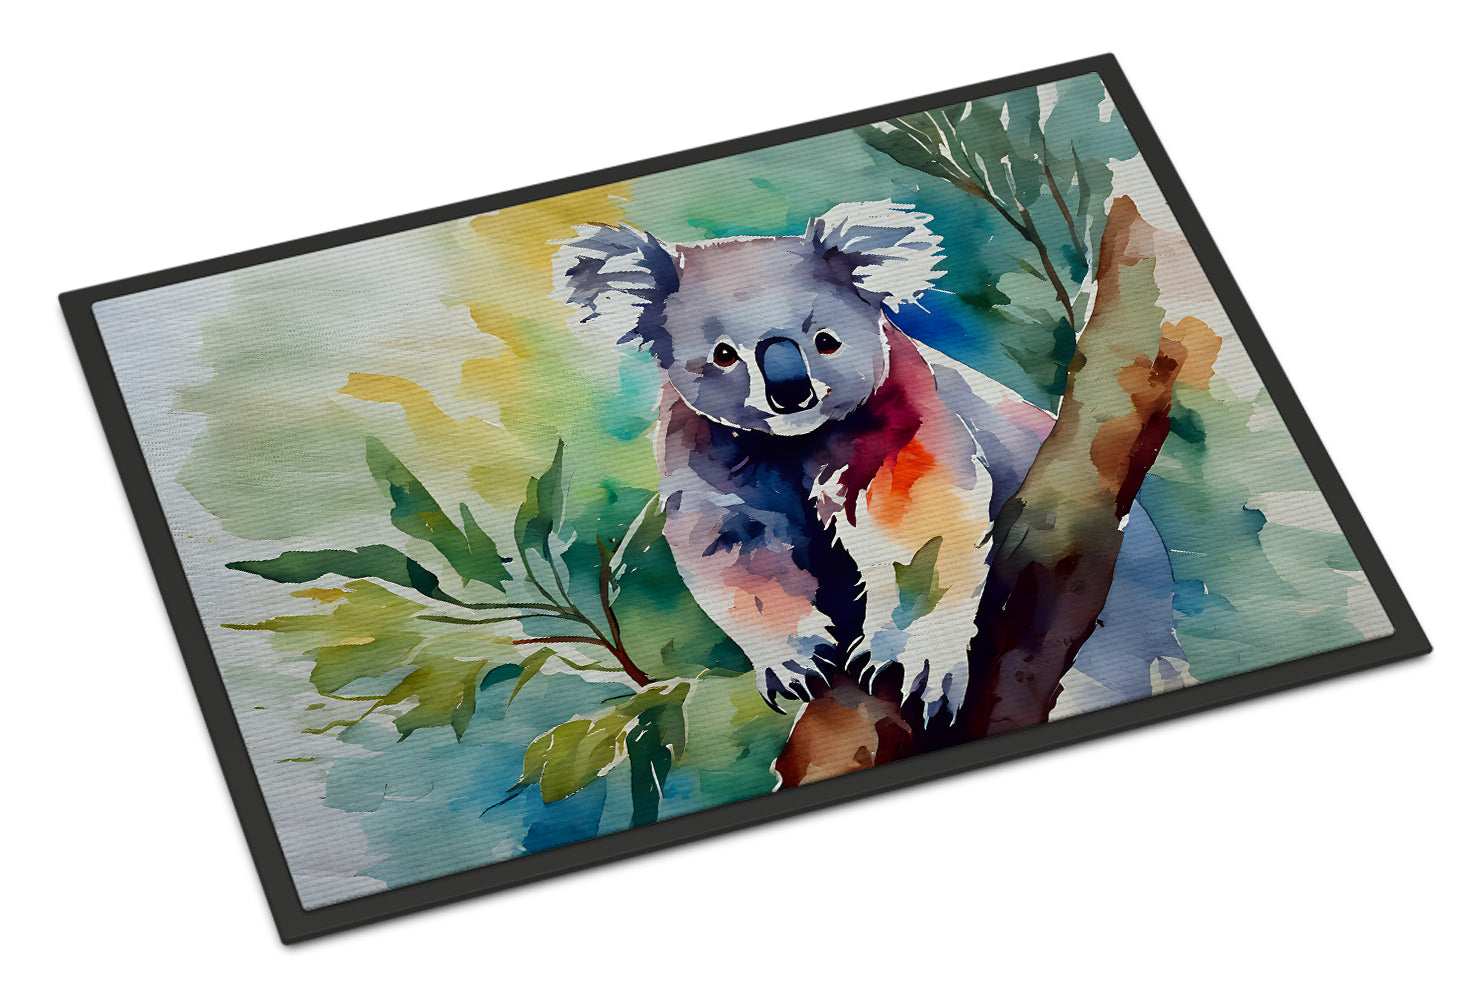 Buy this Koala Doormat